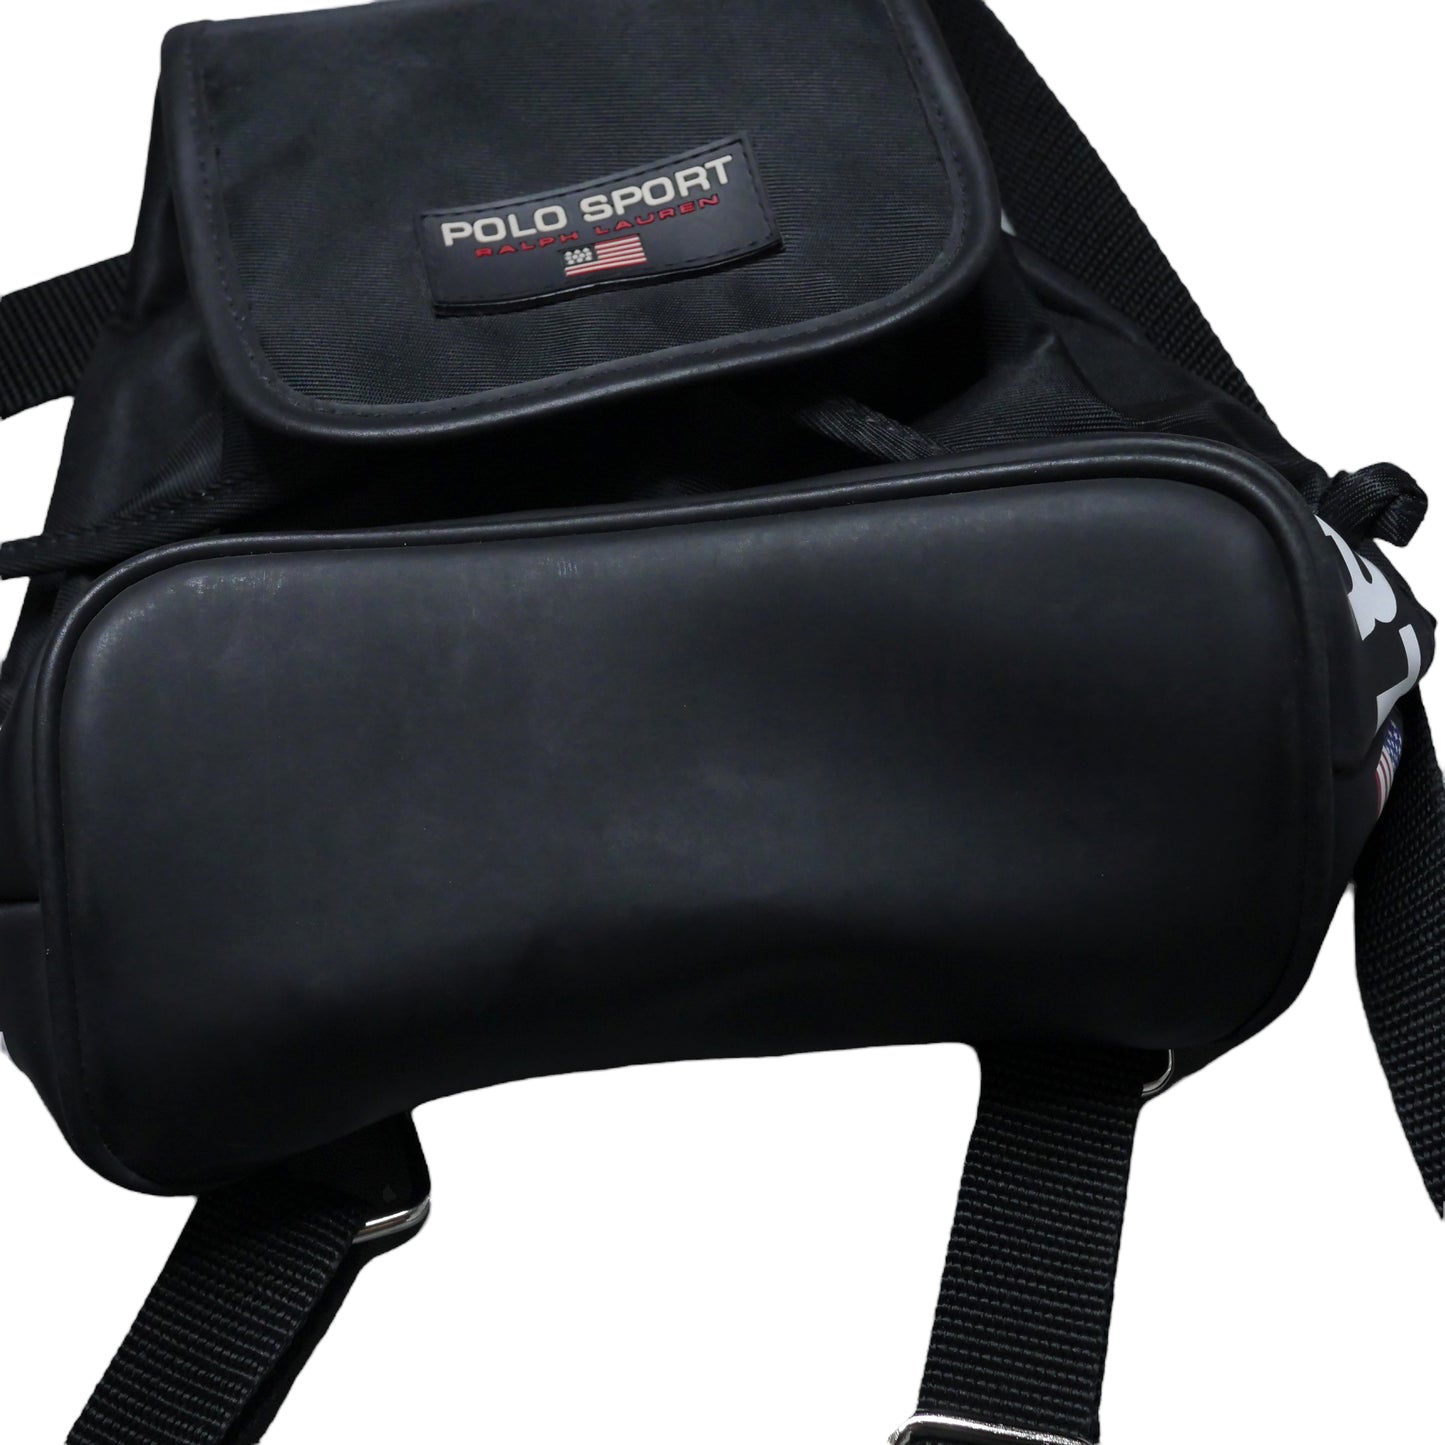 Polo Sport Mini Backpack - Black